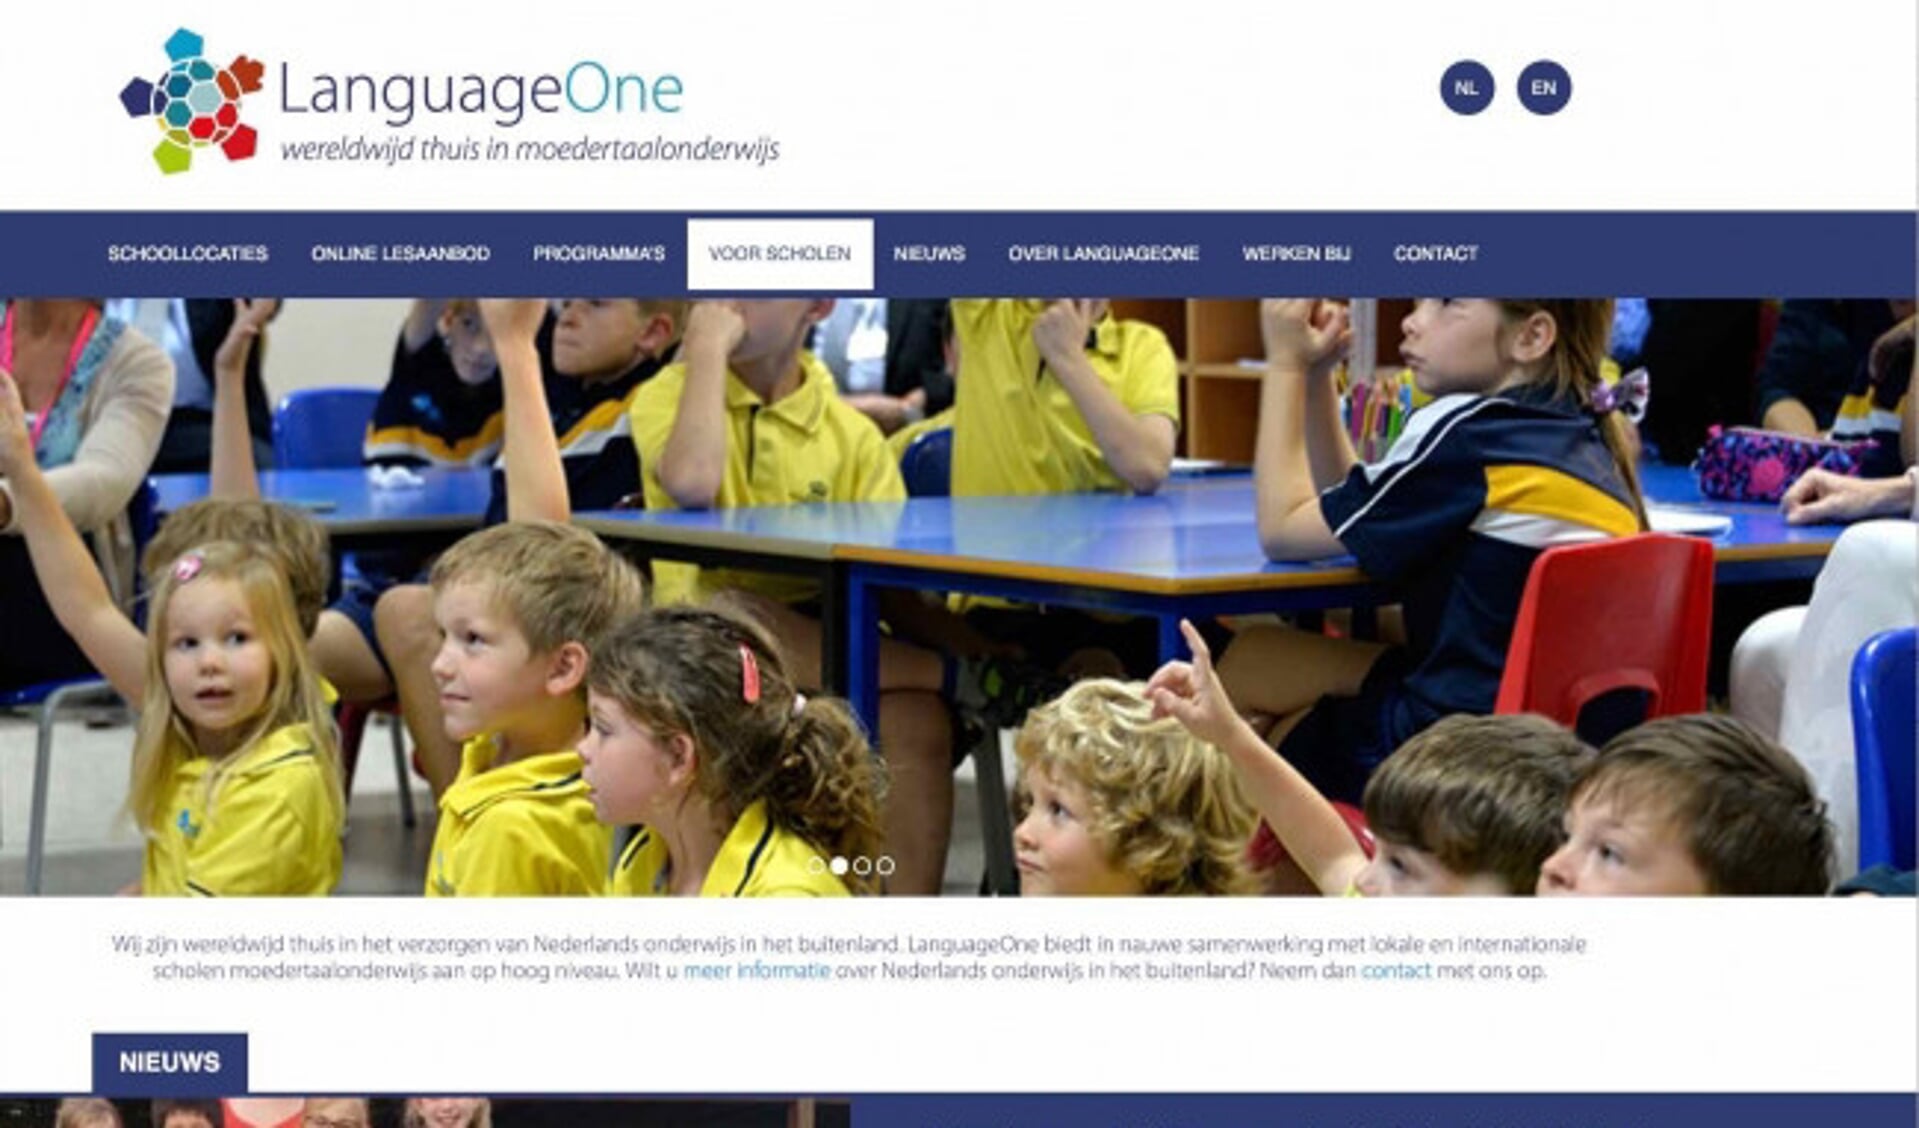  De website van LanguageOne